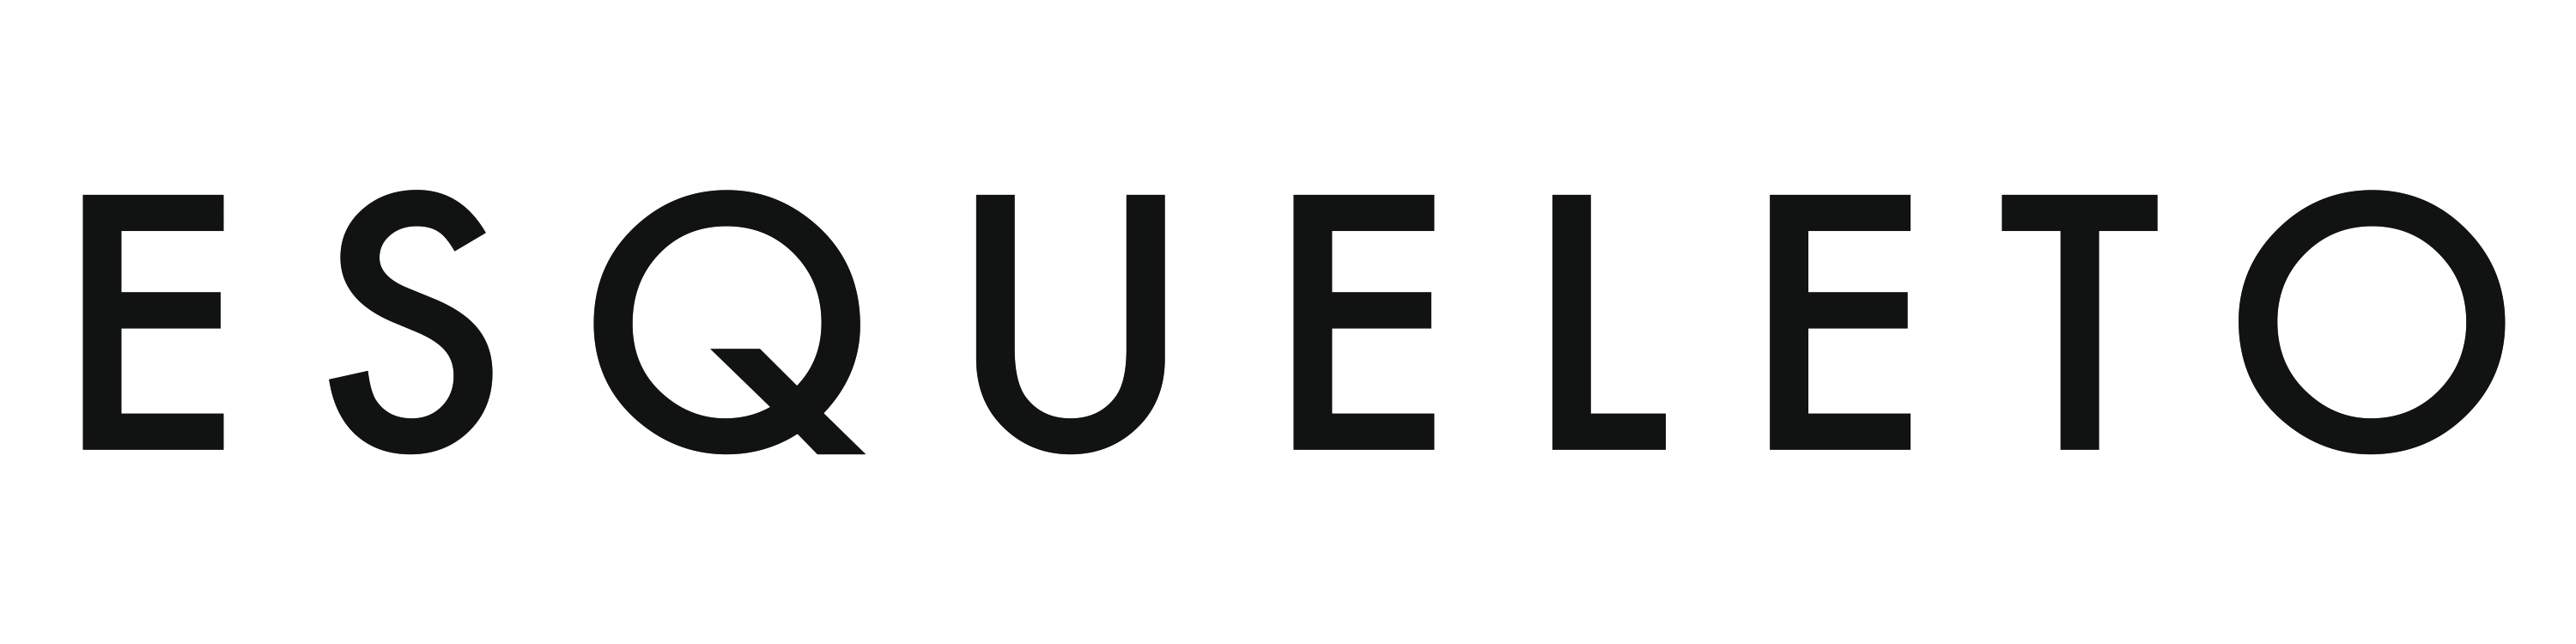 ESQUELETO_logo